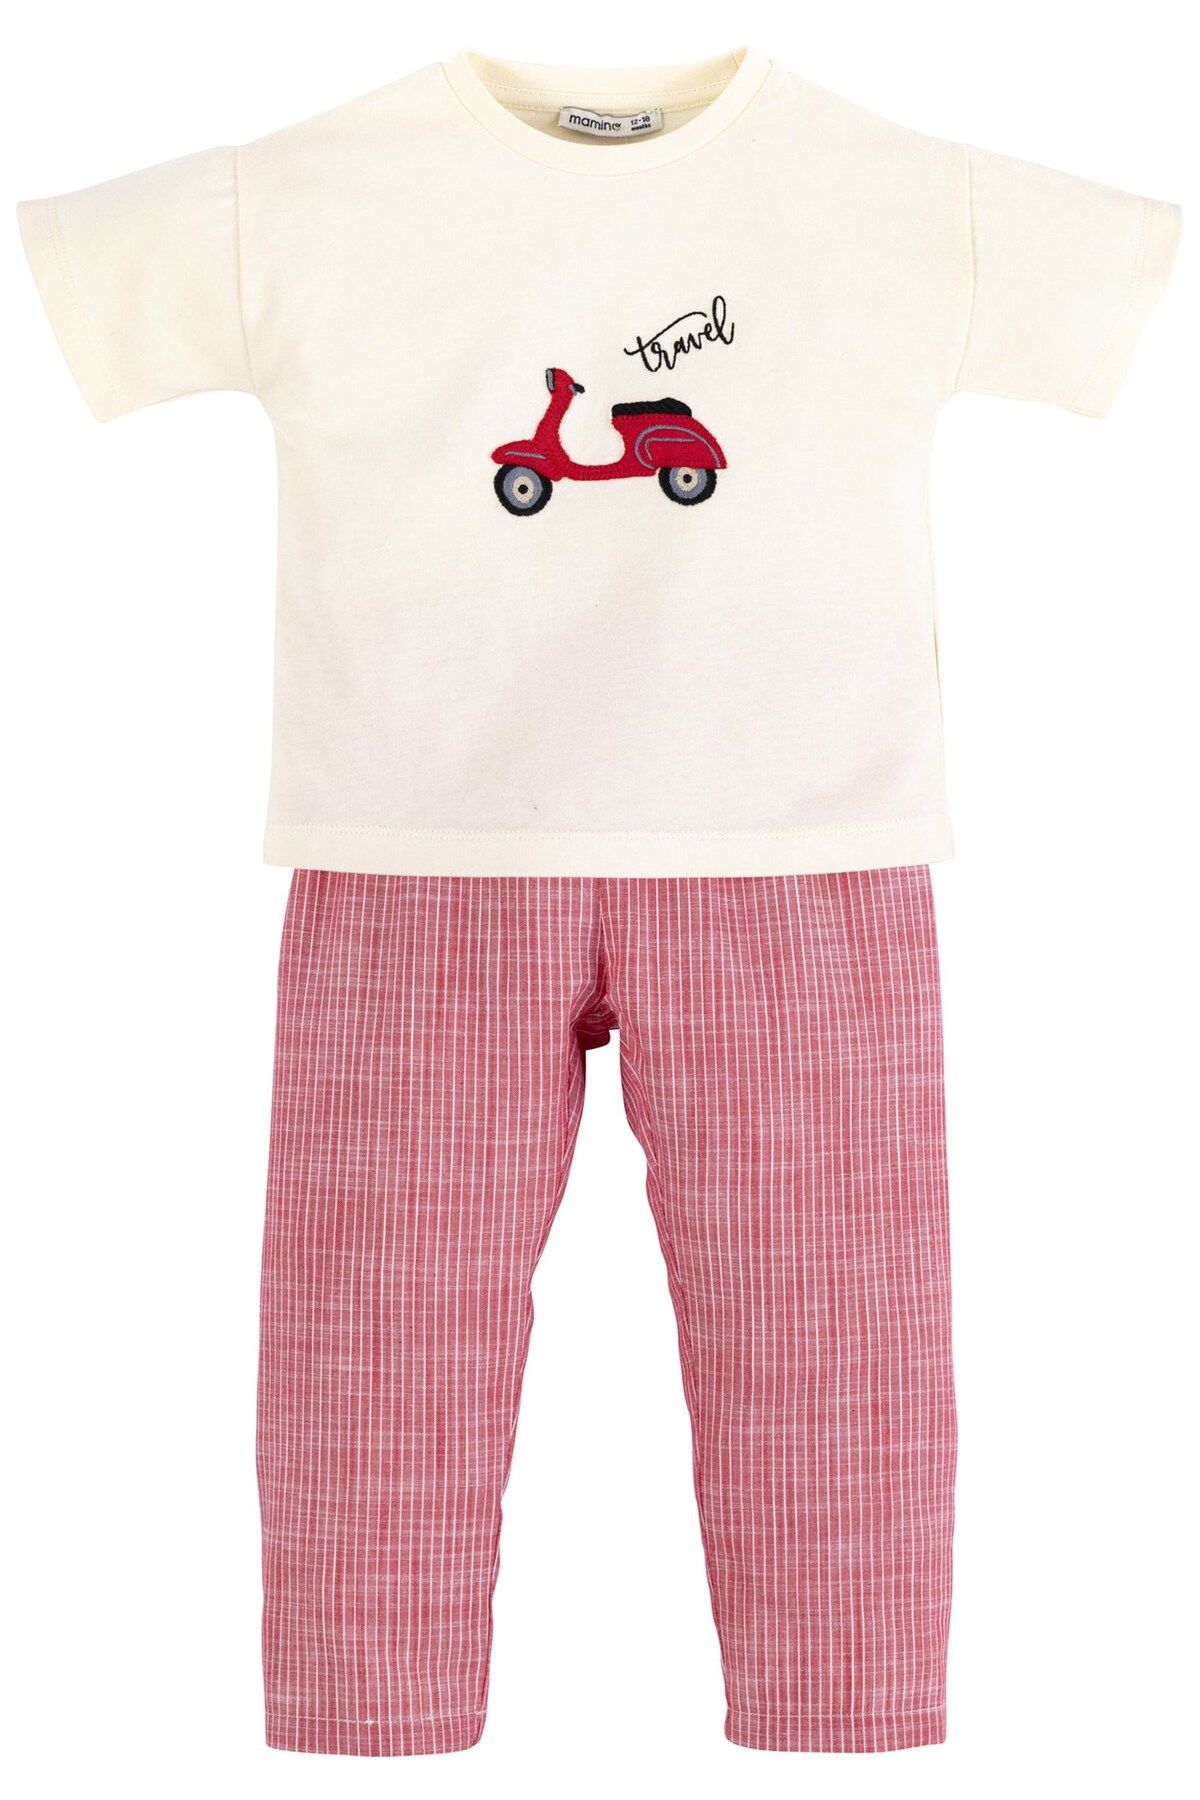 İDİL BABY Nakışlı Pijama Takımı